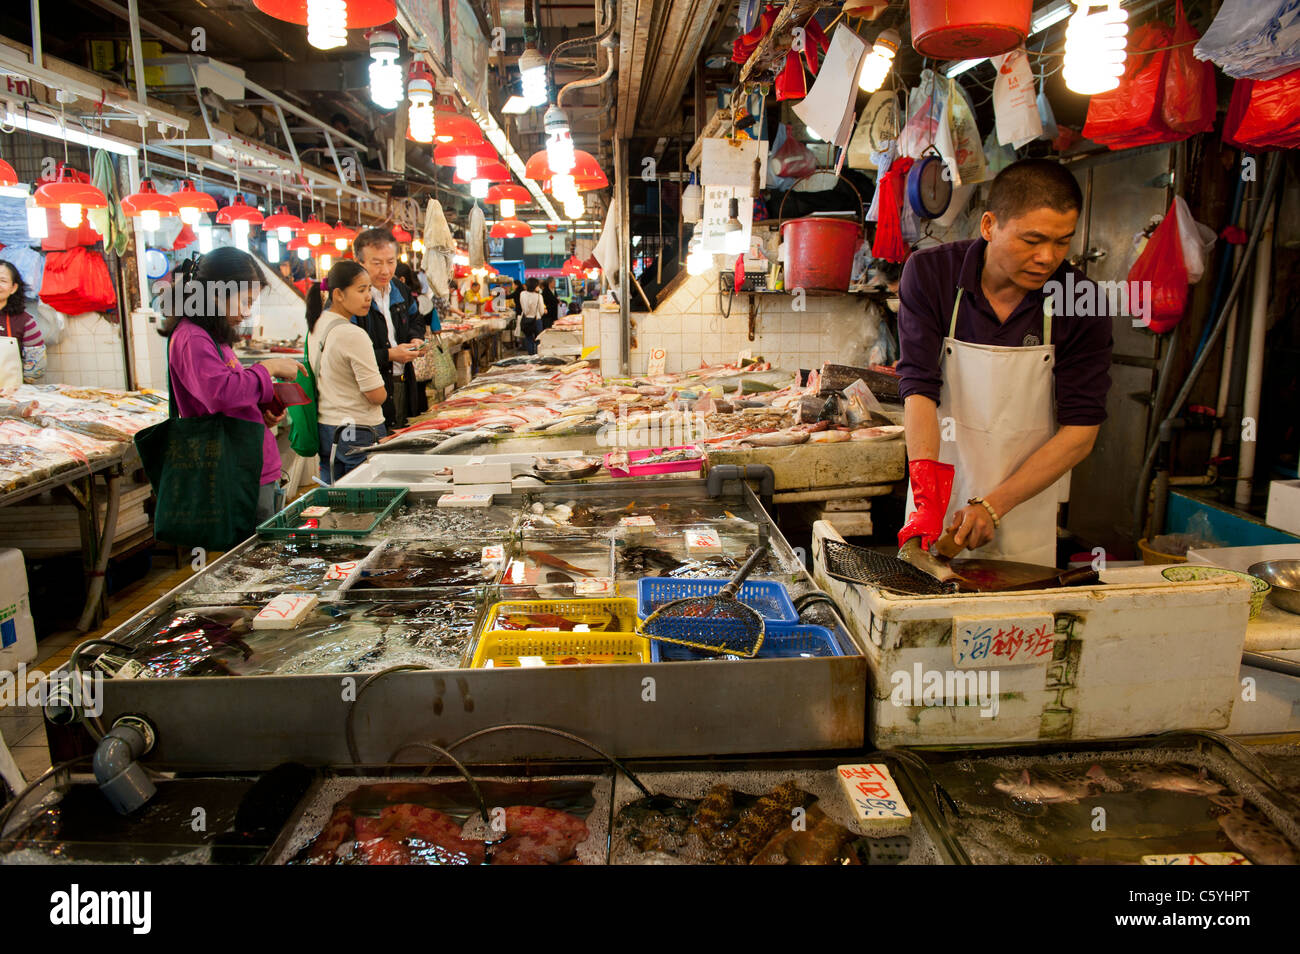 Des marchands de poisson les étals de marché dans la région de Tung Choi Street Mong Kok, Kowloon, Hong Kong Banque D'Images